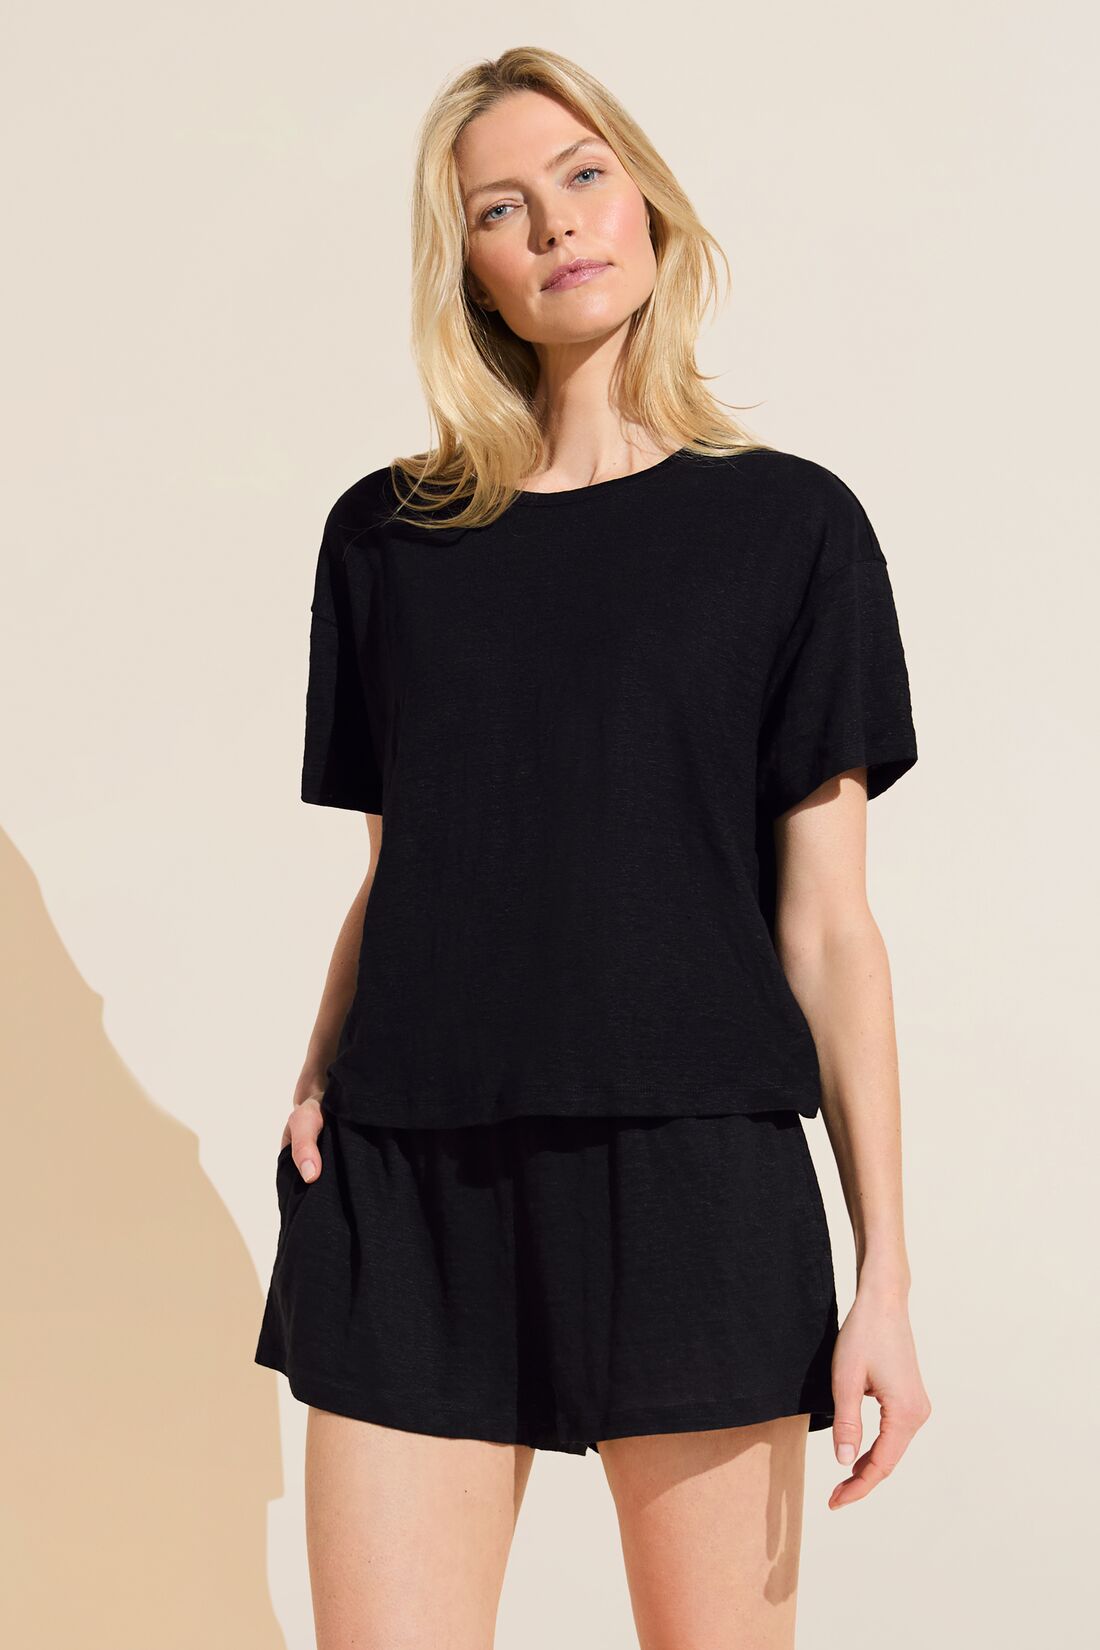 Organic Linen Knit Short Sleeve T-Shirt